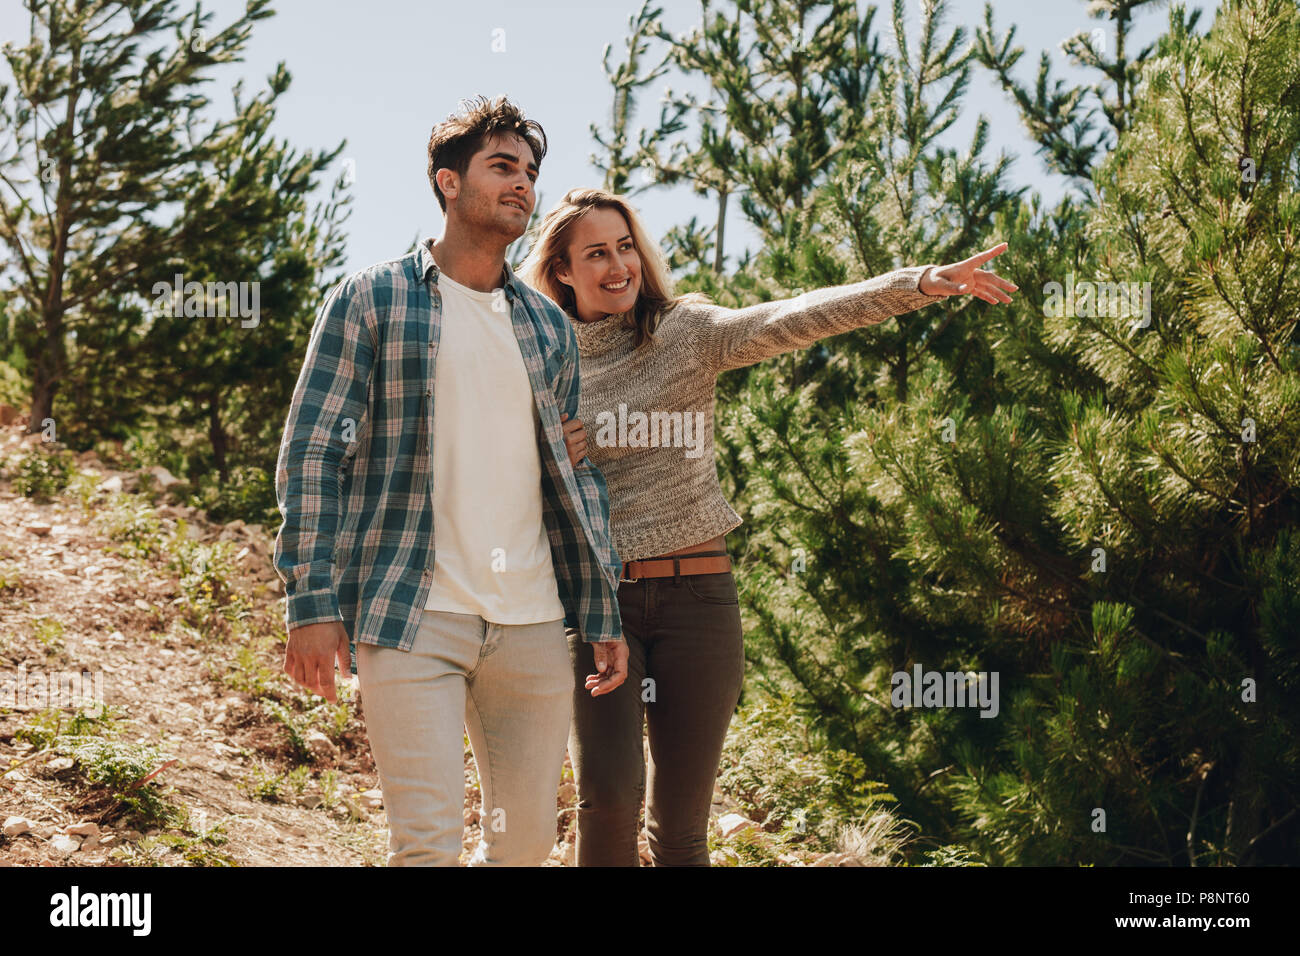 Young man and woman walking in mountain rail avec femme montrant une vue. Couple looking at a vue tout en randonnée dans la nature. Banque D'Images